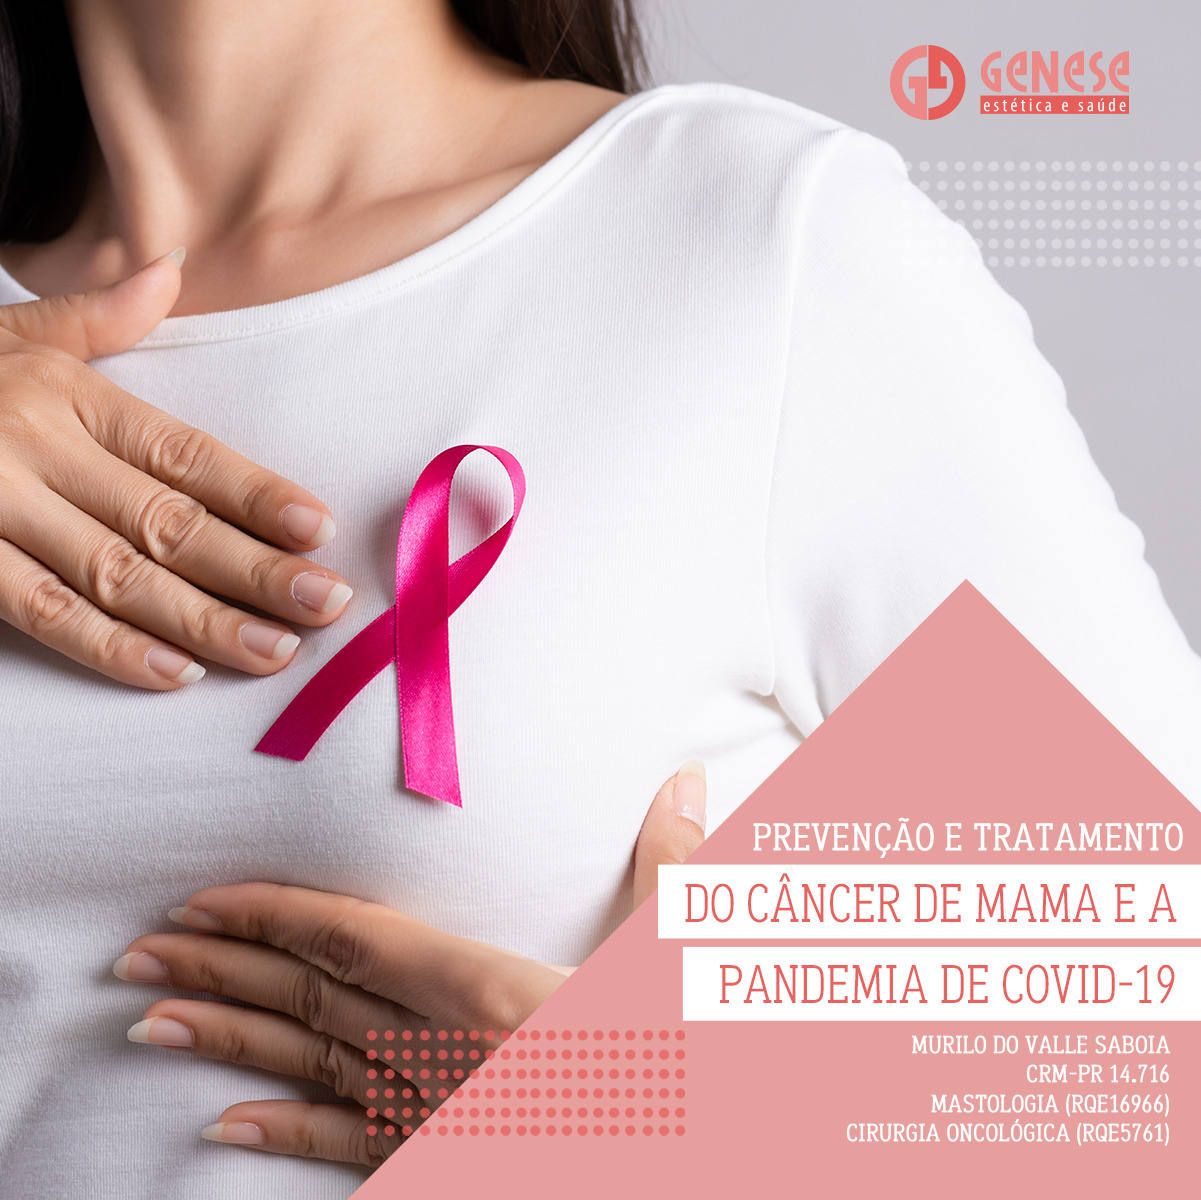 Read more about the article Prevenção e tratamento do câncer de mama e a pandemia de COVID-19